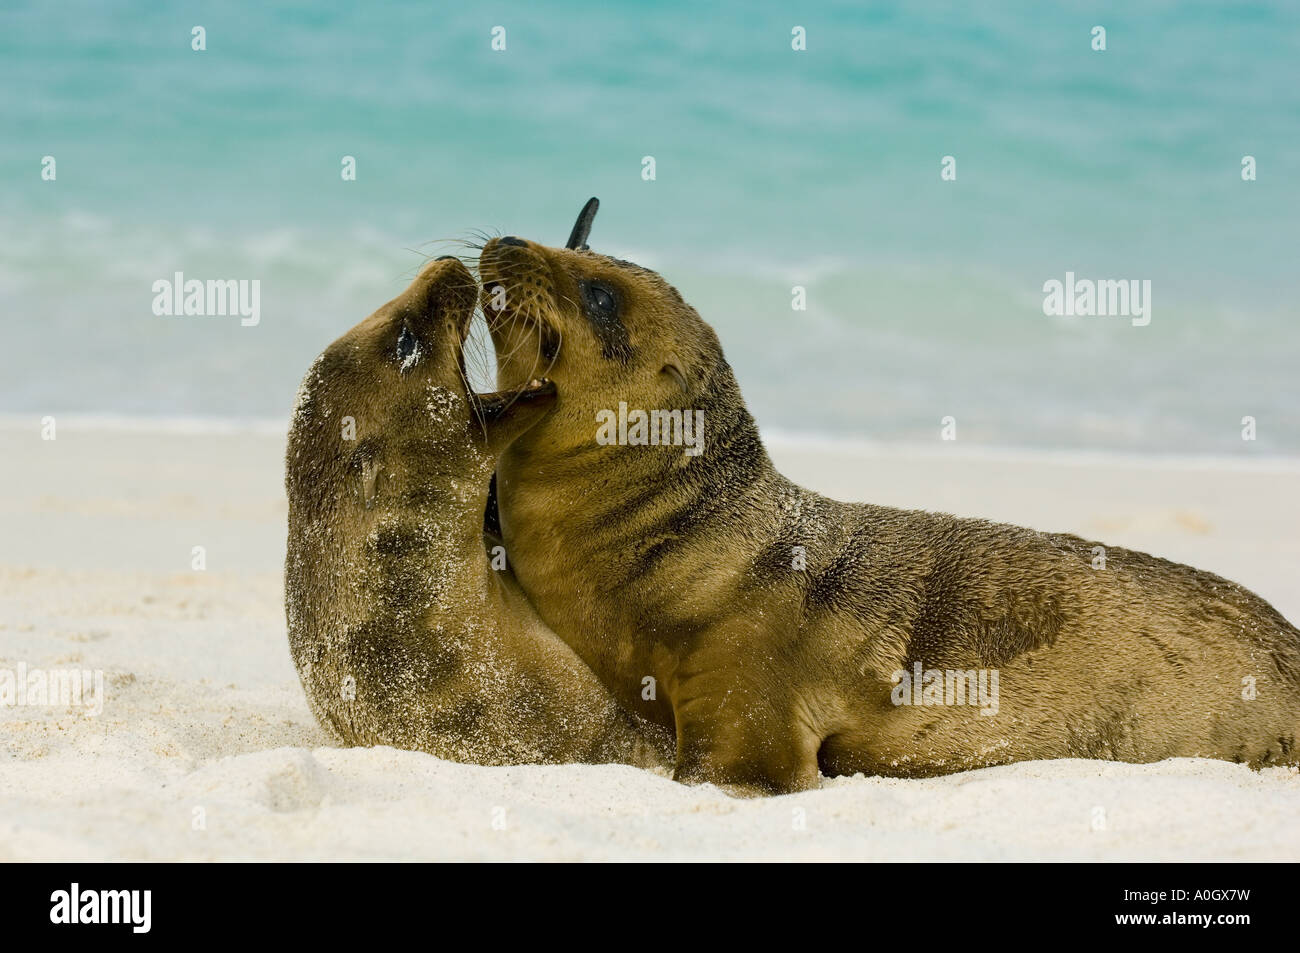 Le Galapagos i leoni di mare (Zalophus wollebaeki) cuccioli giocando, Cappa isola GALAPAGOS Foto Stock